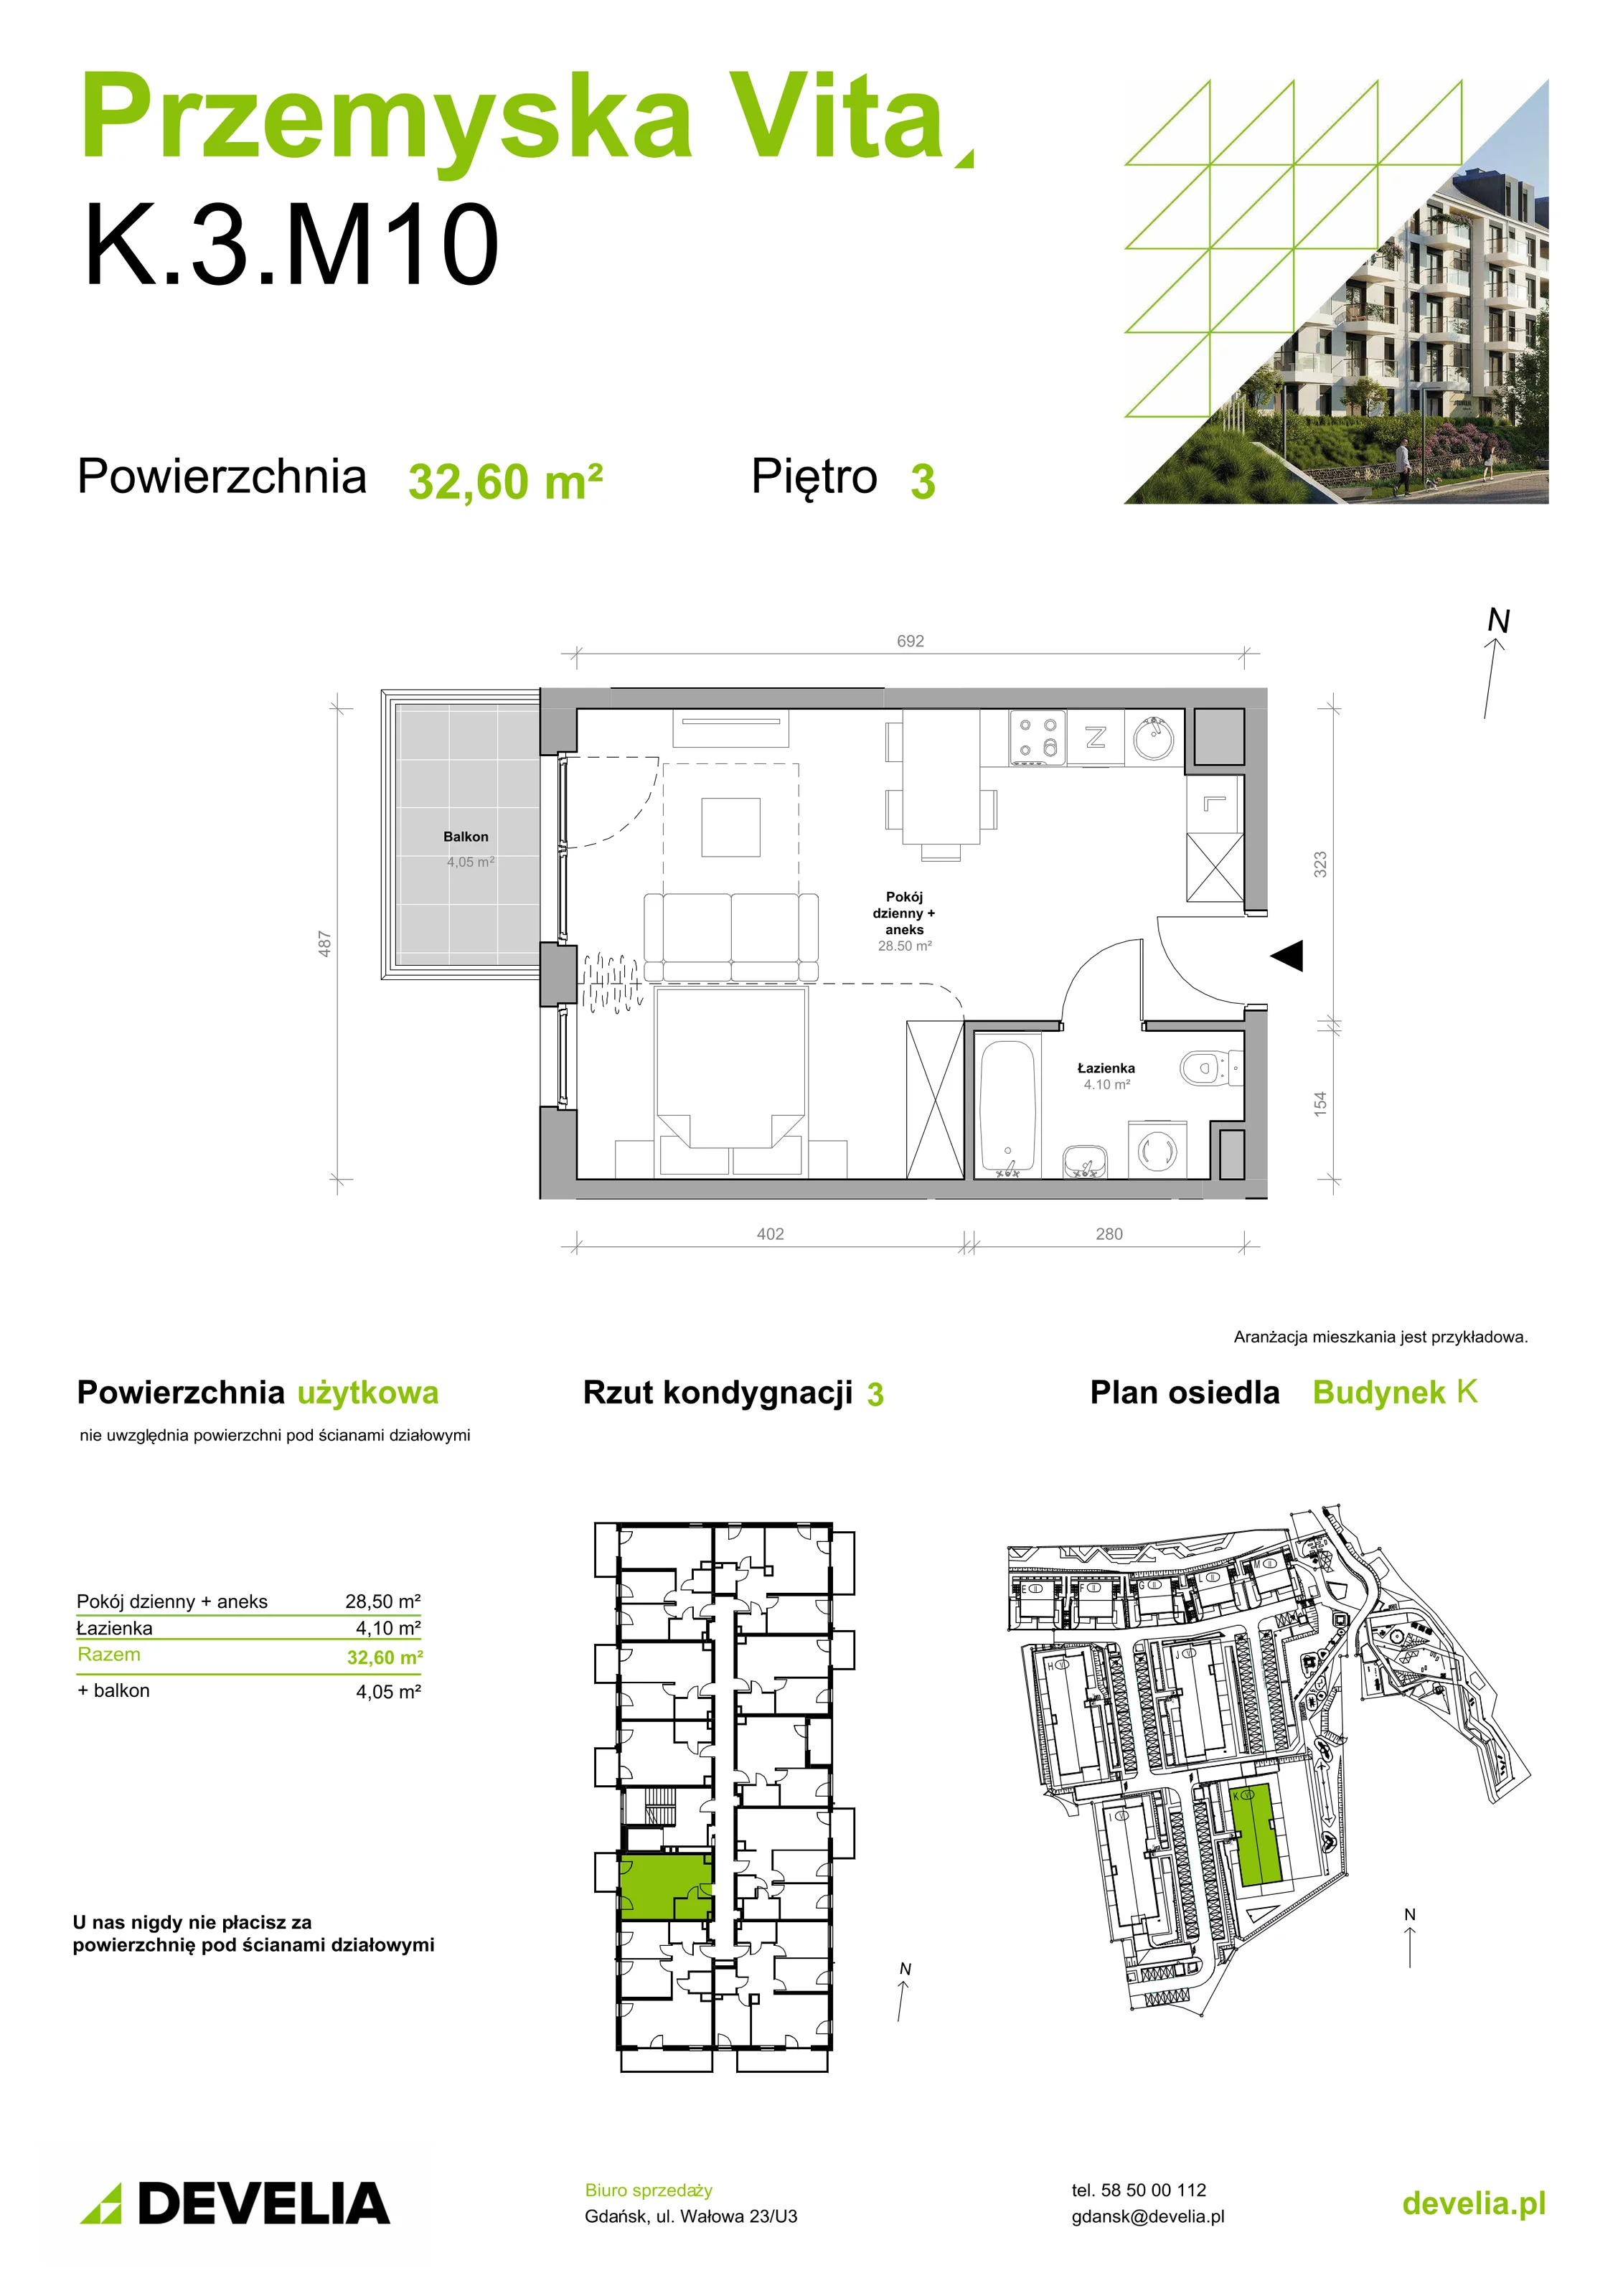 Mieszkanie 32,60 m², piętro 3, oferta nr K.3.M10, Przemyska Vita, Gdańsk, Ujeścisko-Łostowice, Ujeścisko, ul. Przemyska 37